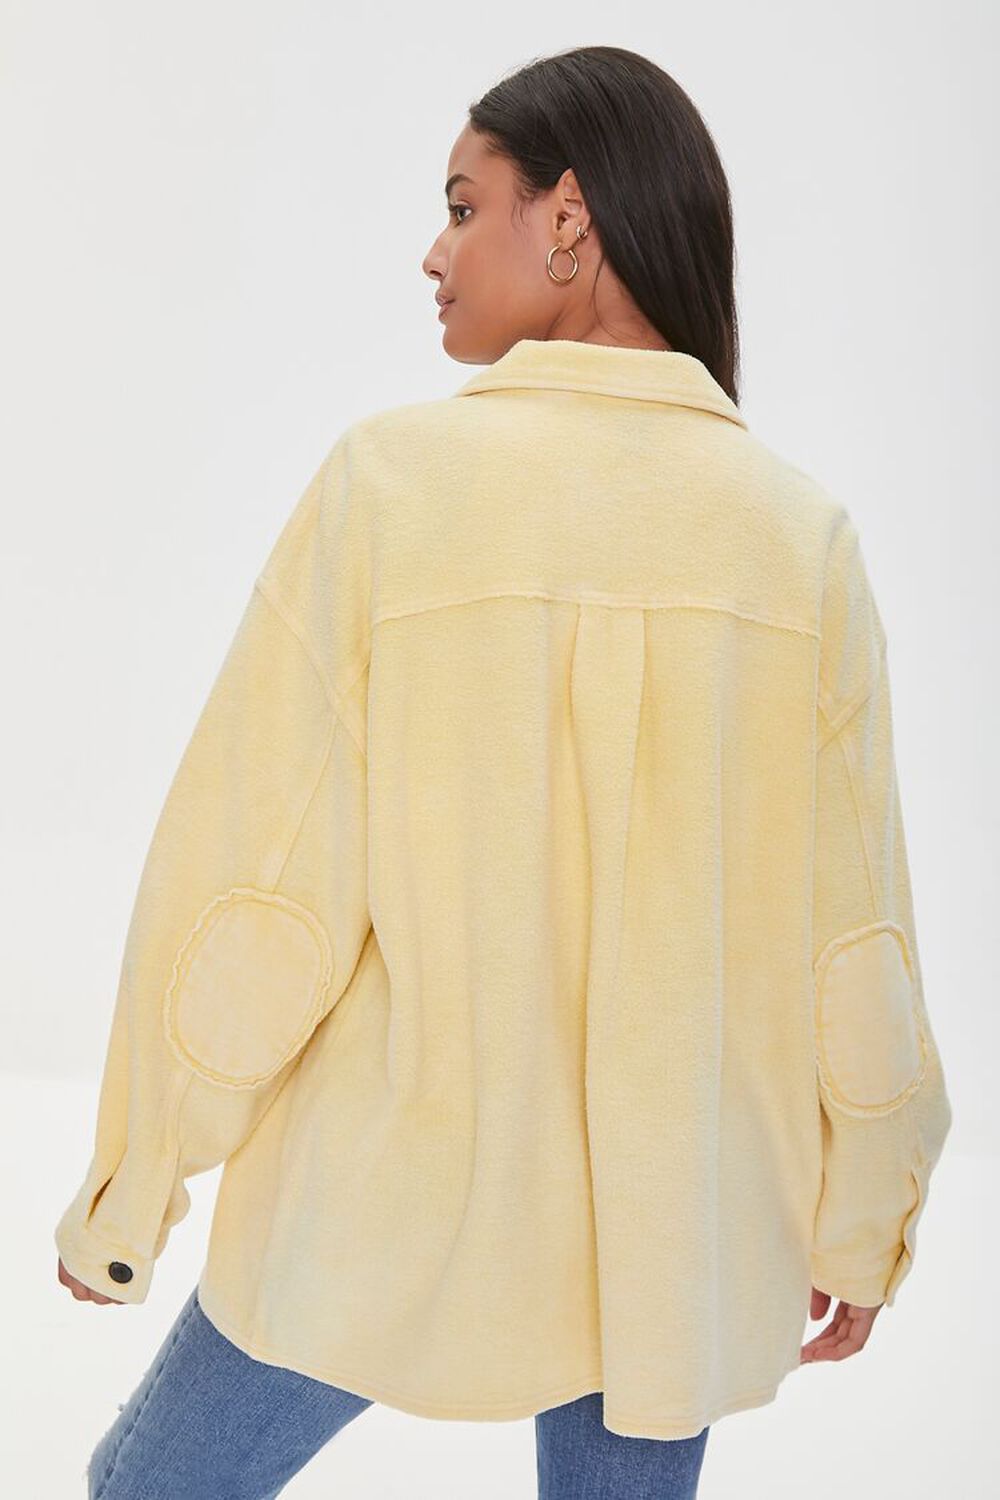 YELLOW Reverse Fleece Drop-Sleeve Shacket, image 3